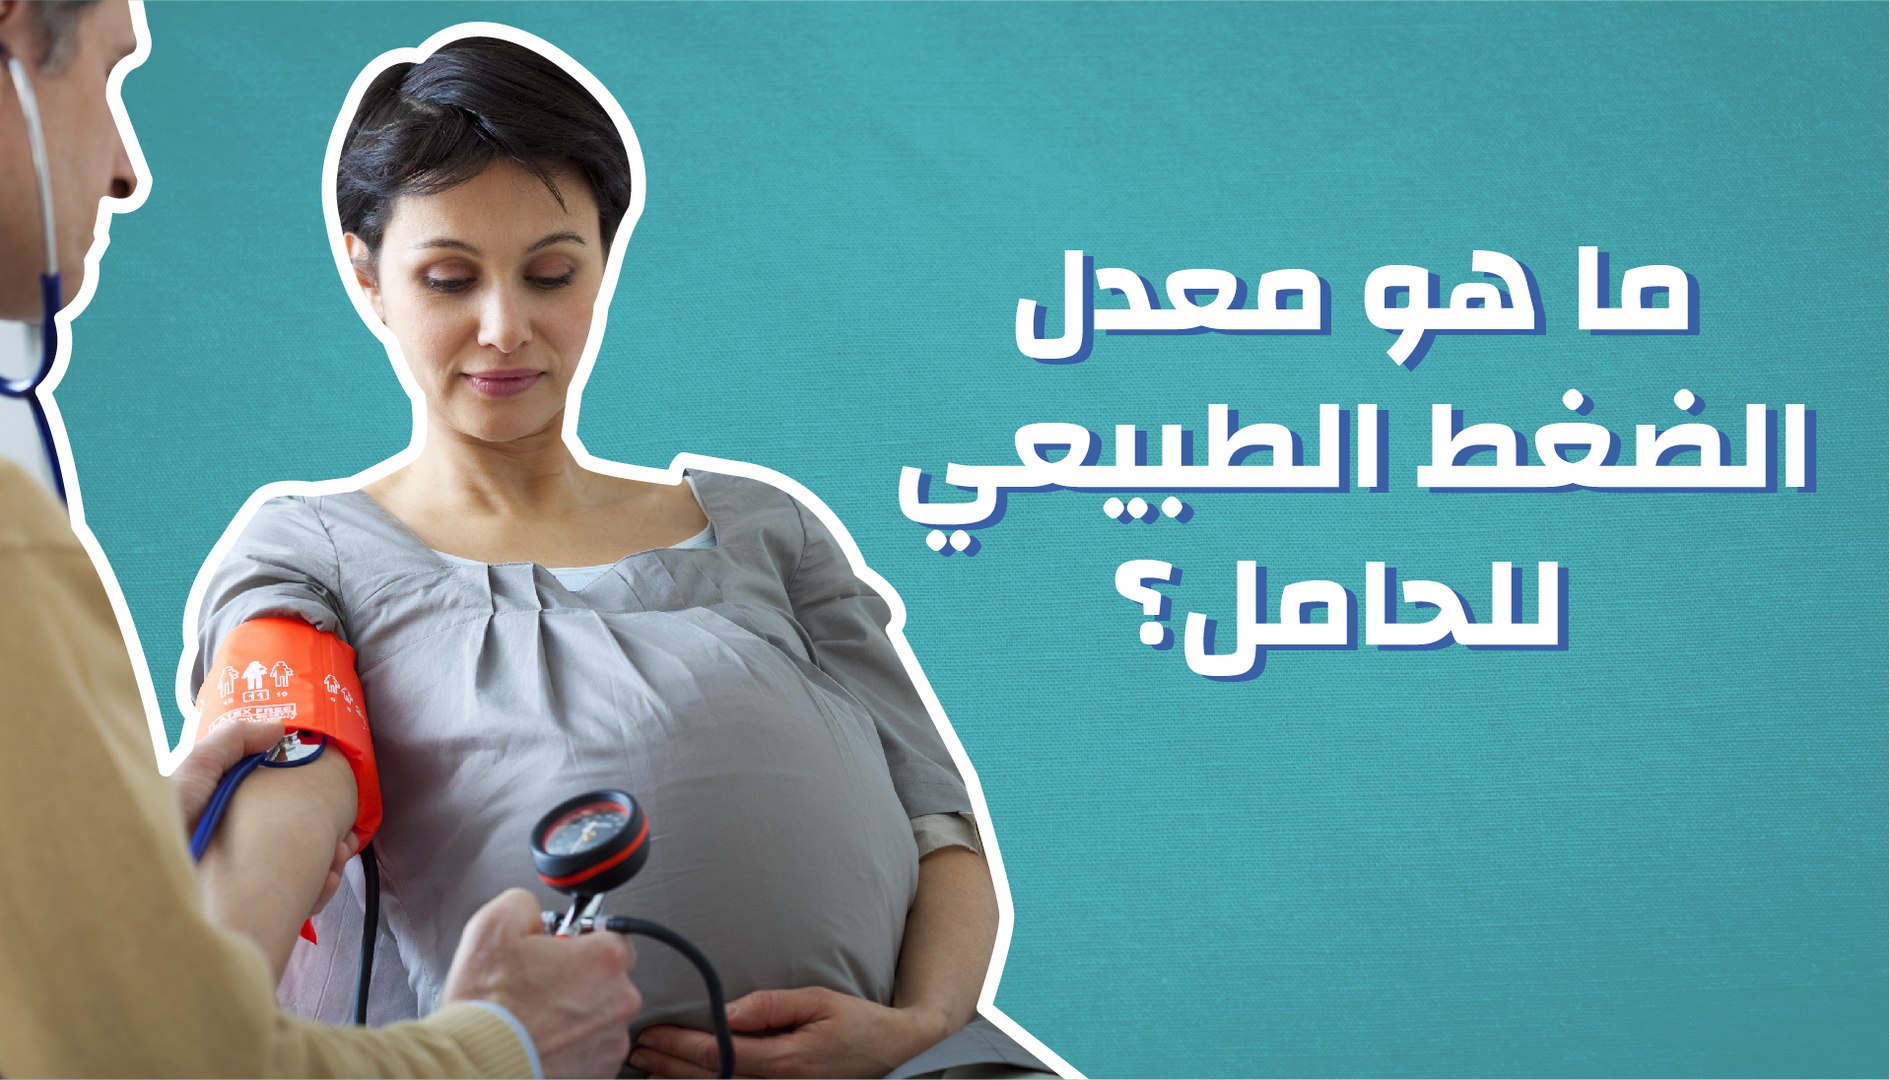 ارتفاع ضغط الدم للحامل الأسباب والأعراض والعلاج